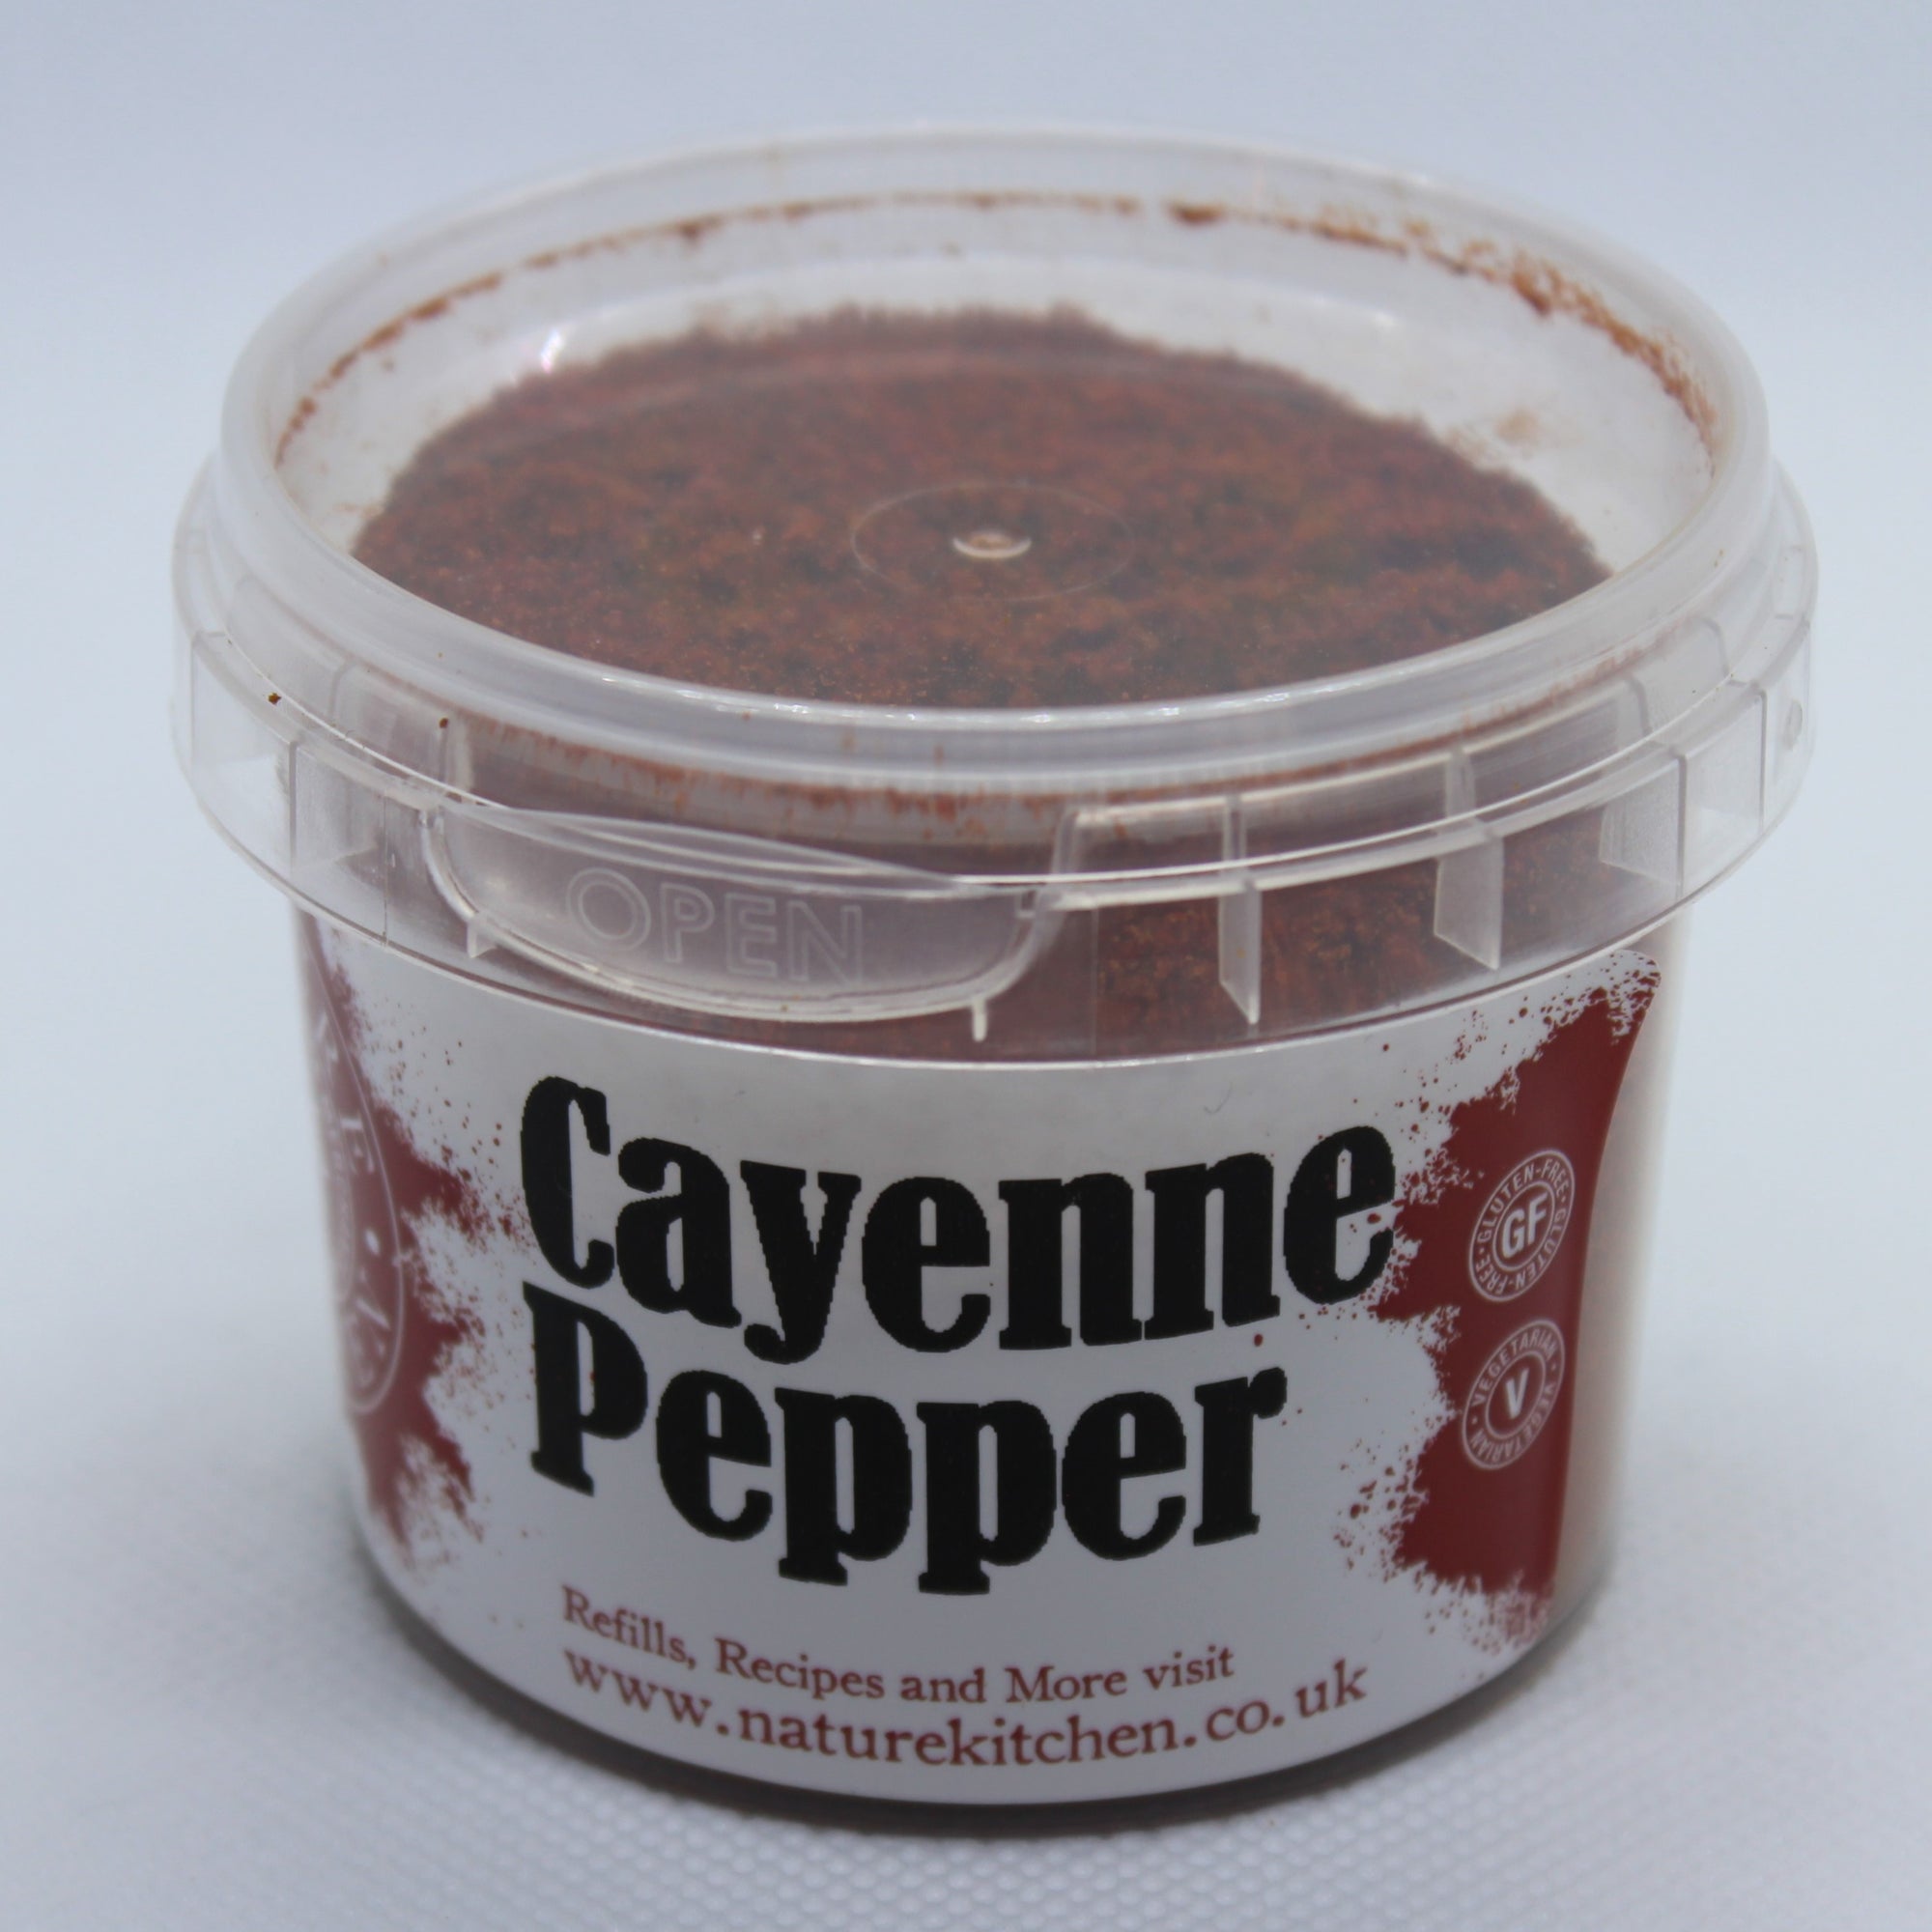 NK Cayenne Pepper 50g